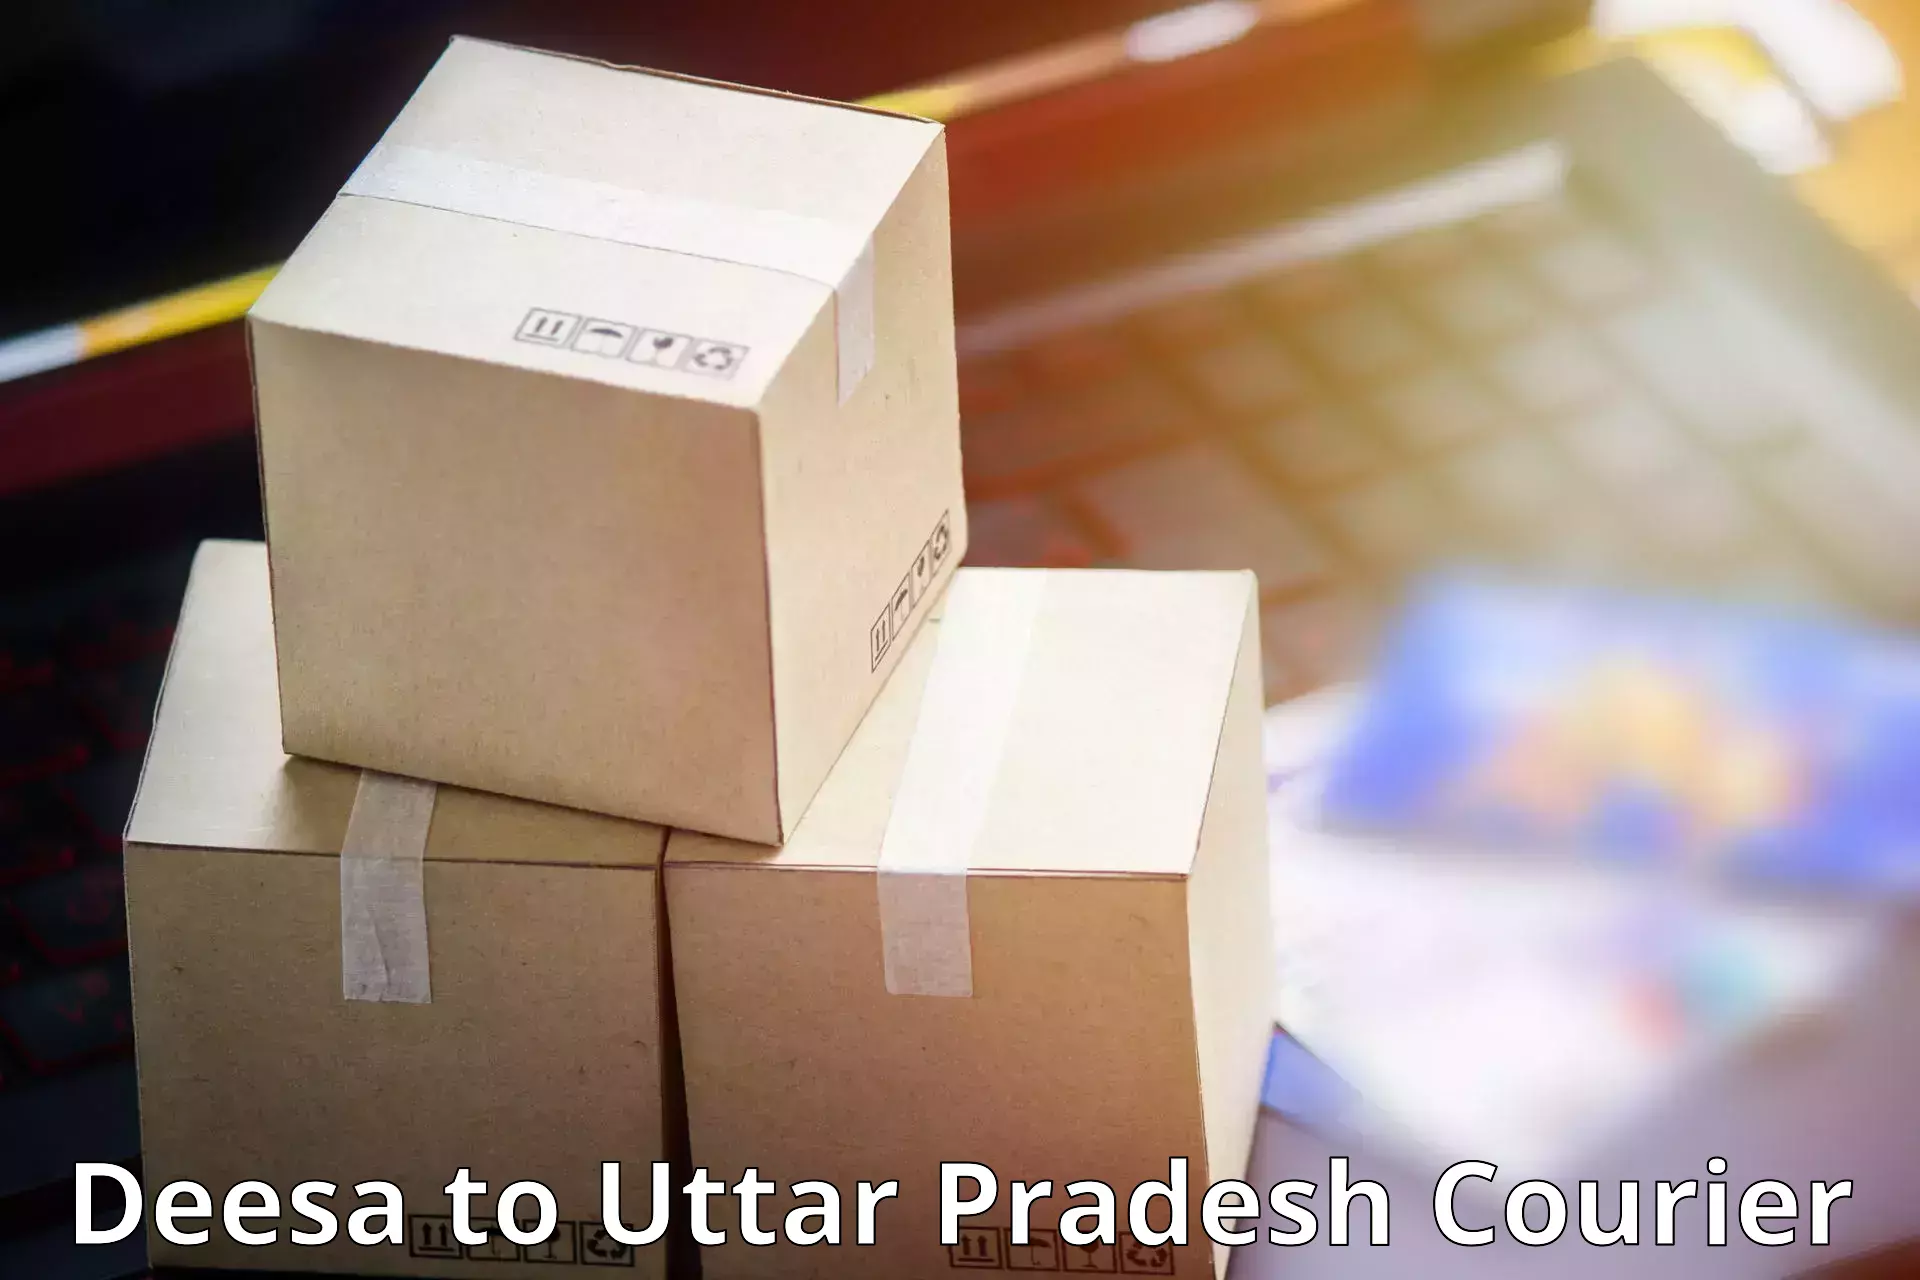 Custom courier solutions Deesa to Ramnagar Varanasi